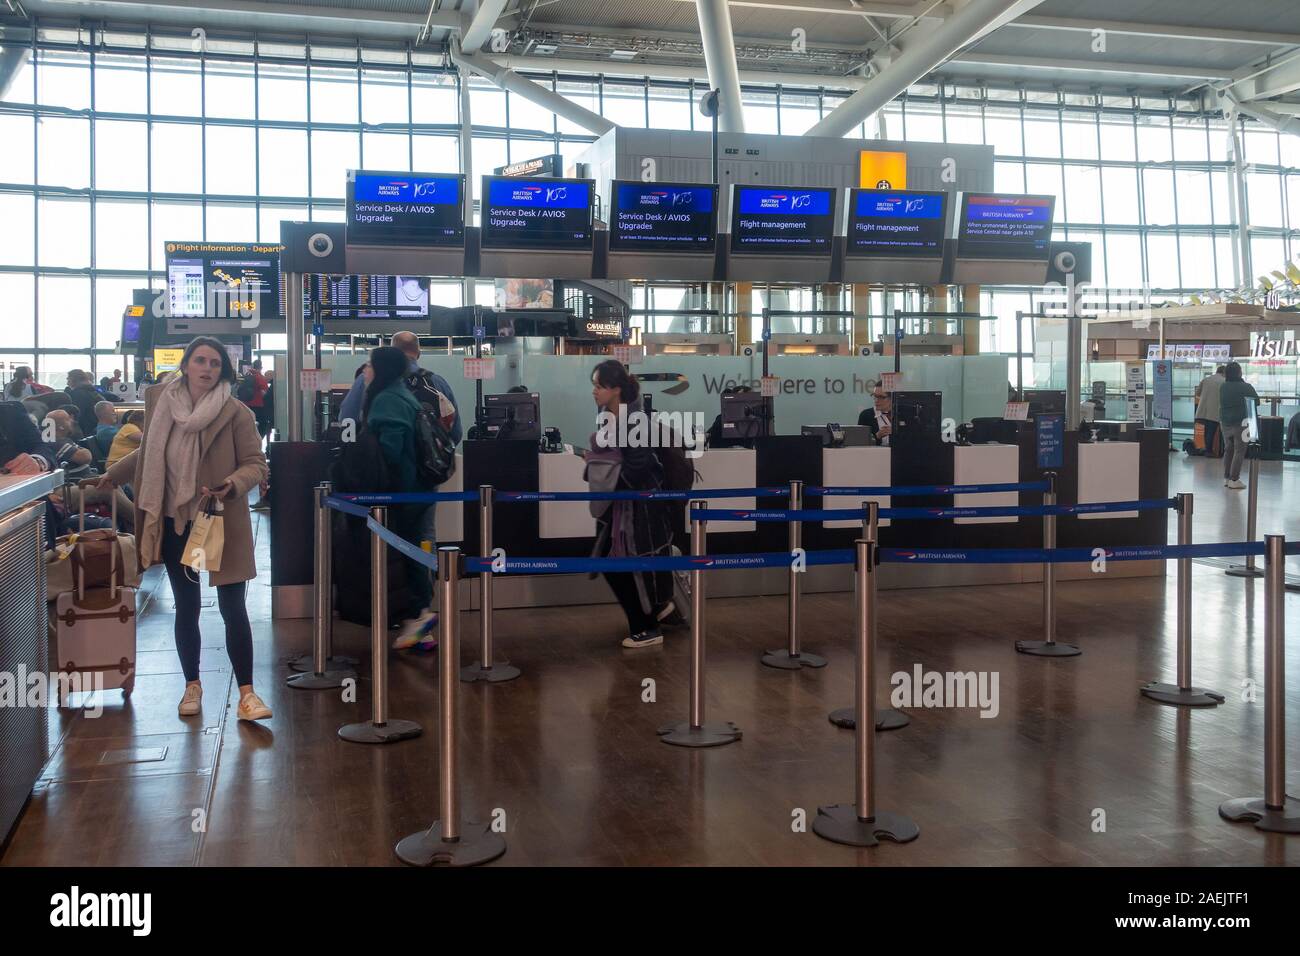 British Airways Customer Service Desks In Departures At Heathrow